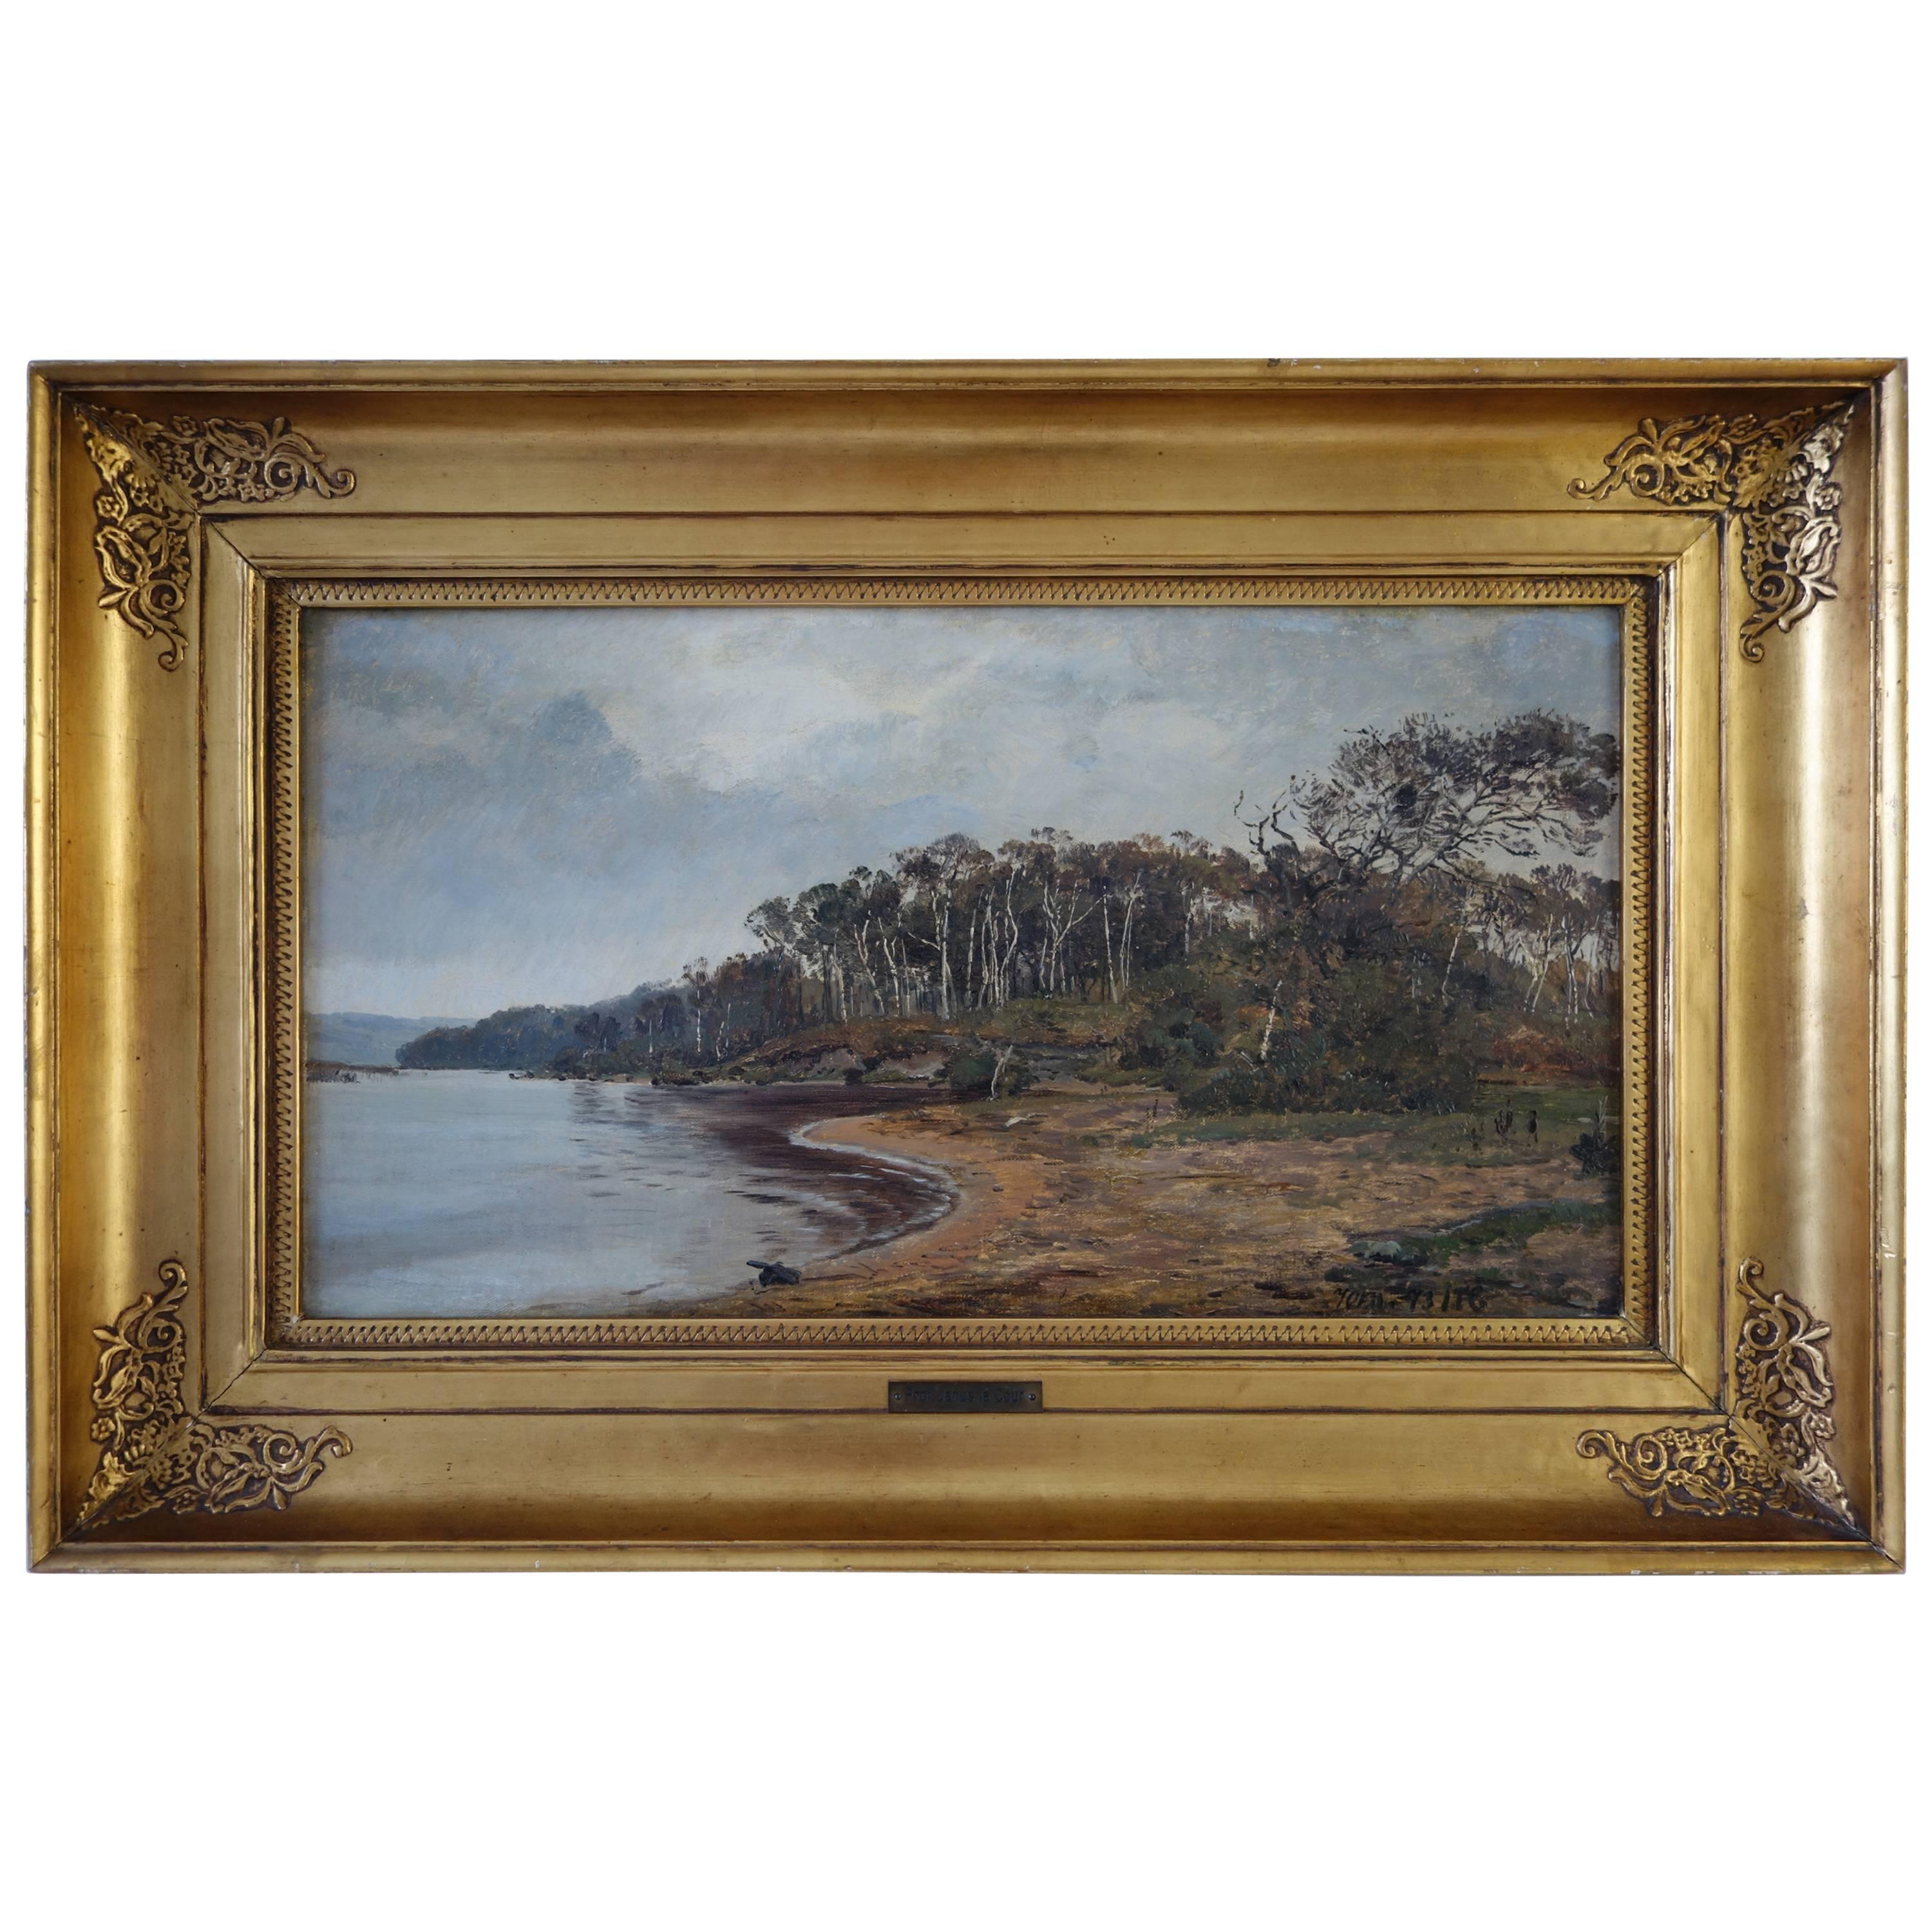 Janus La Cour, Coastal Landscape in October by Ringholm, 1873